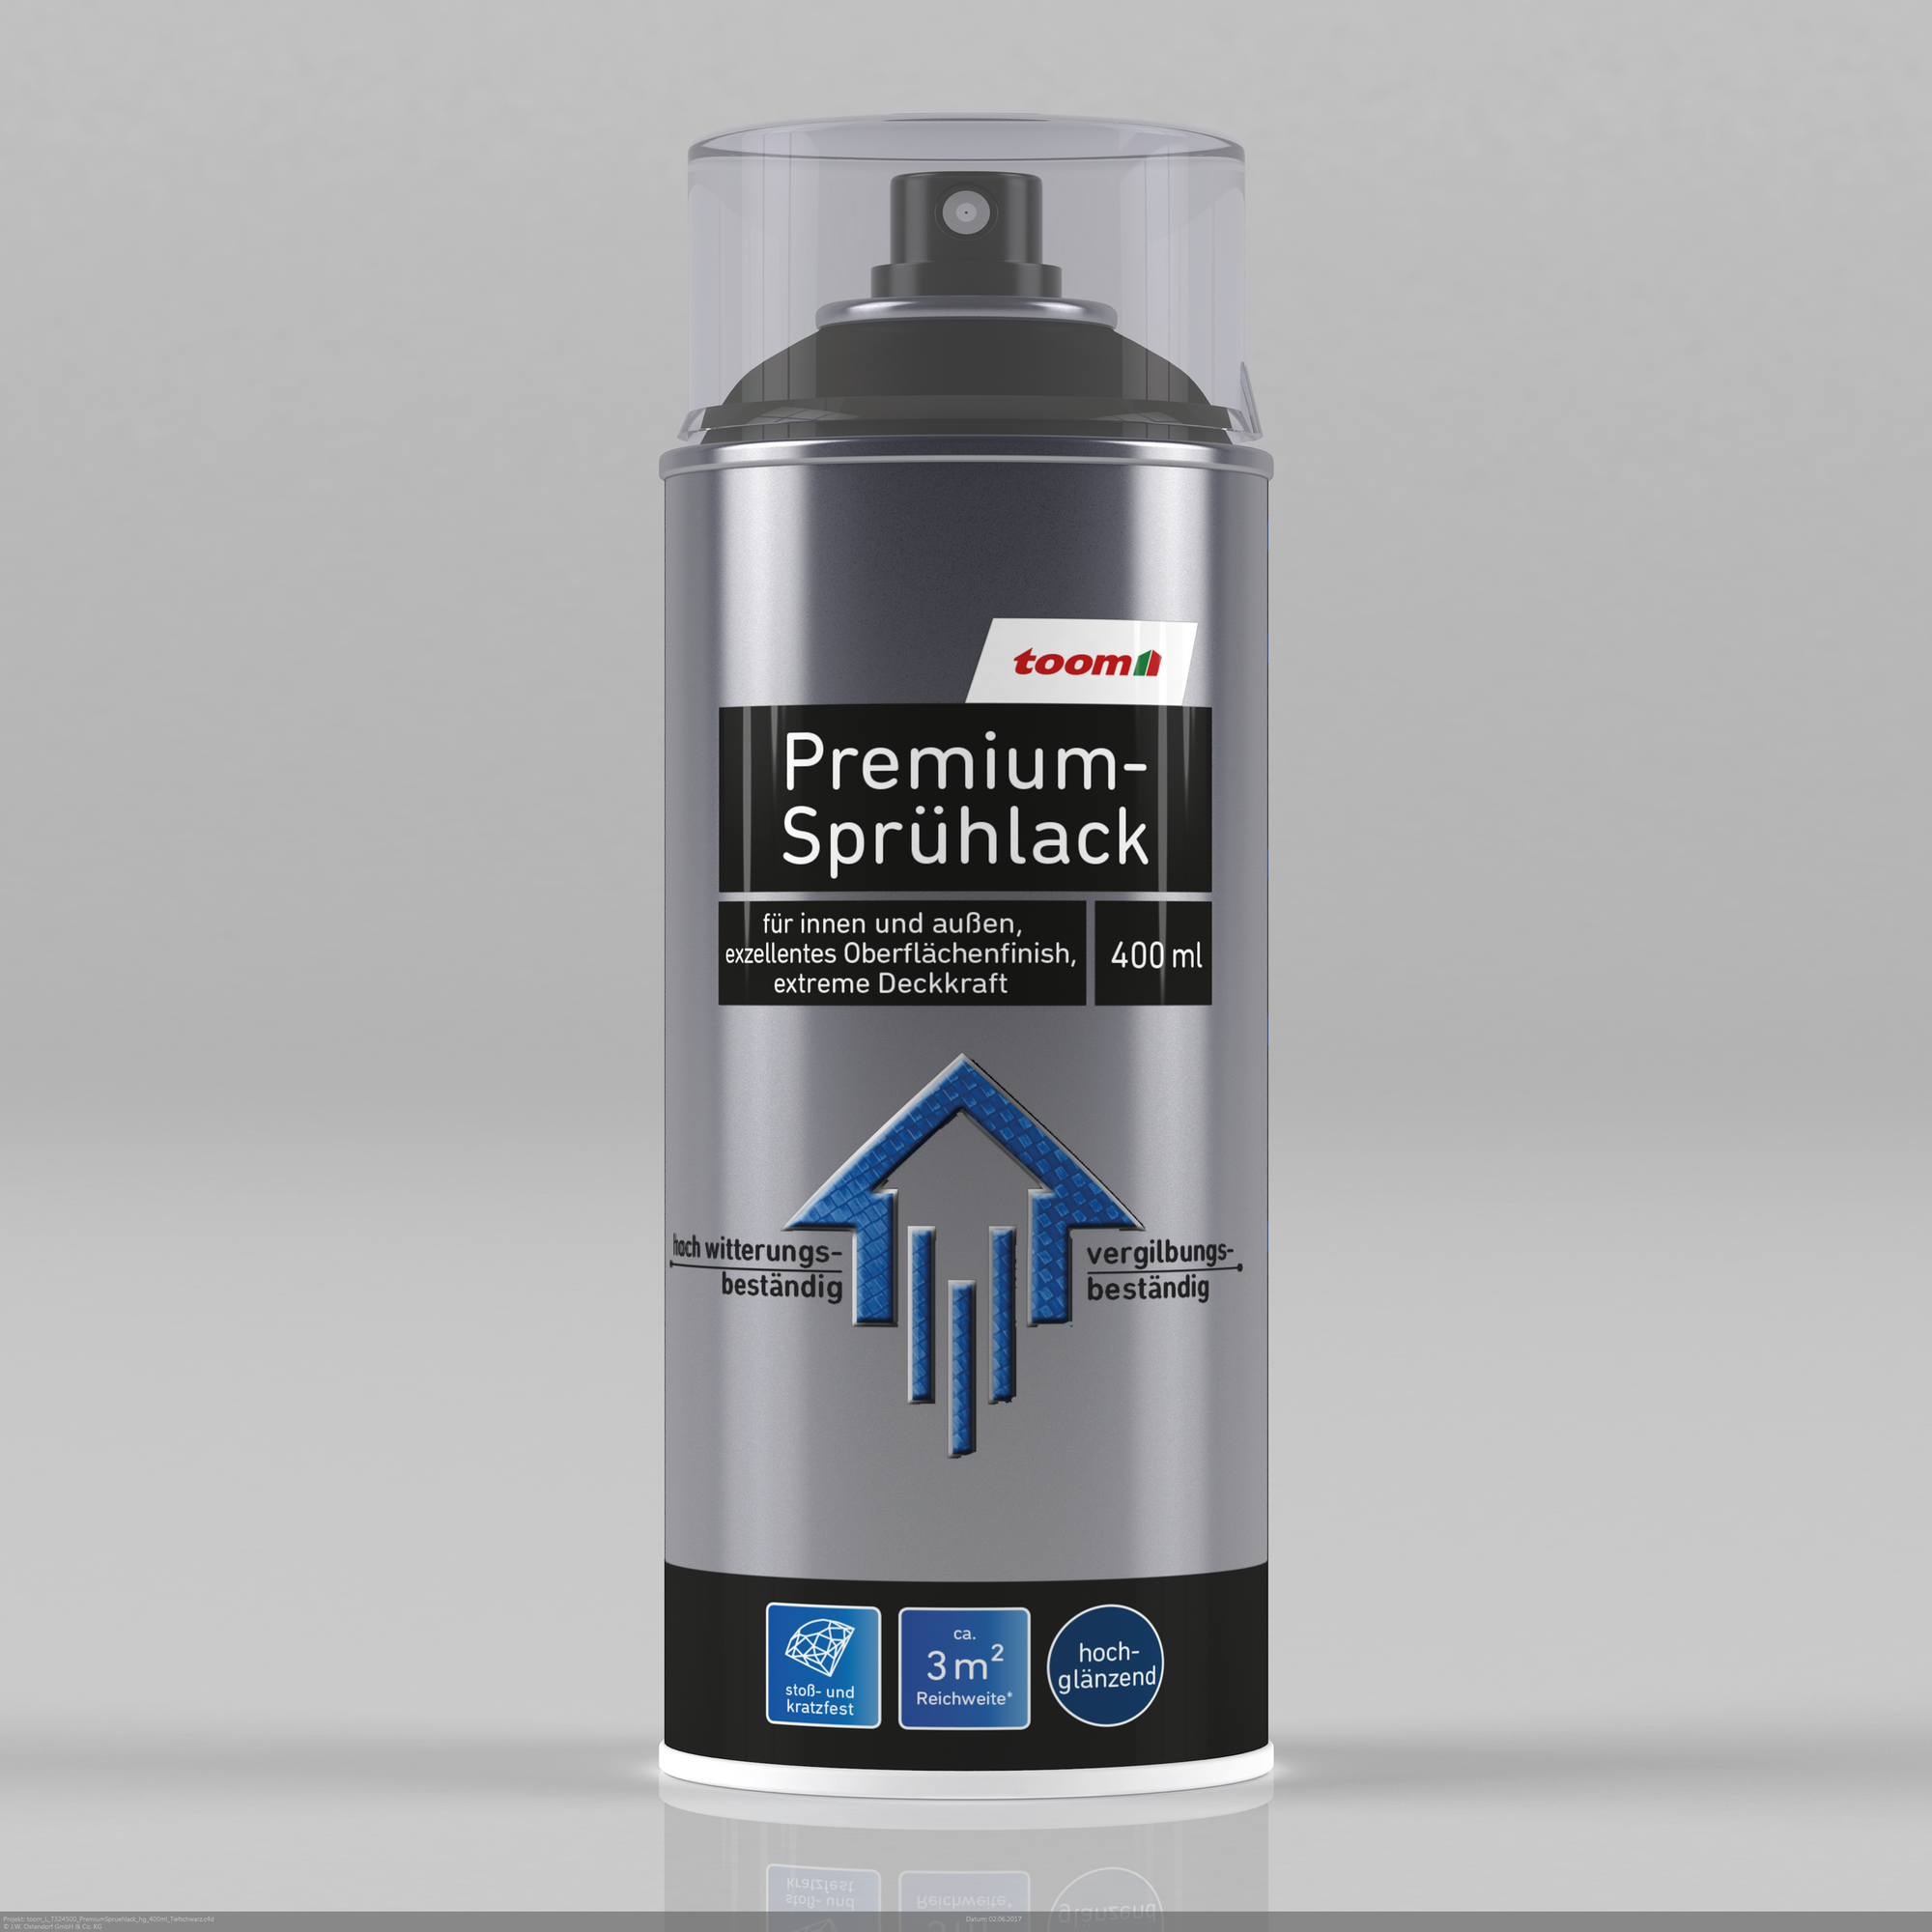 Premium-Sprühlack tiefschwarz glänzend 400 ml + product picture